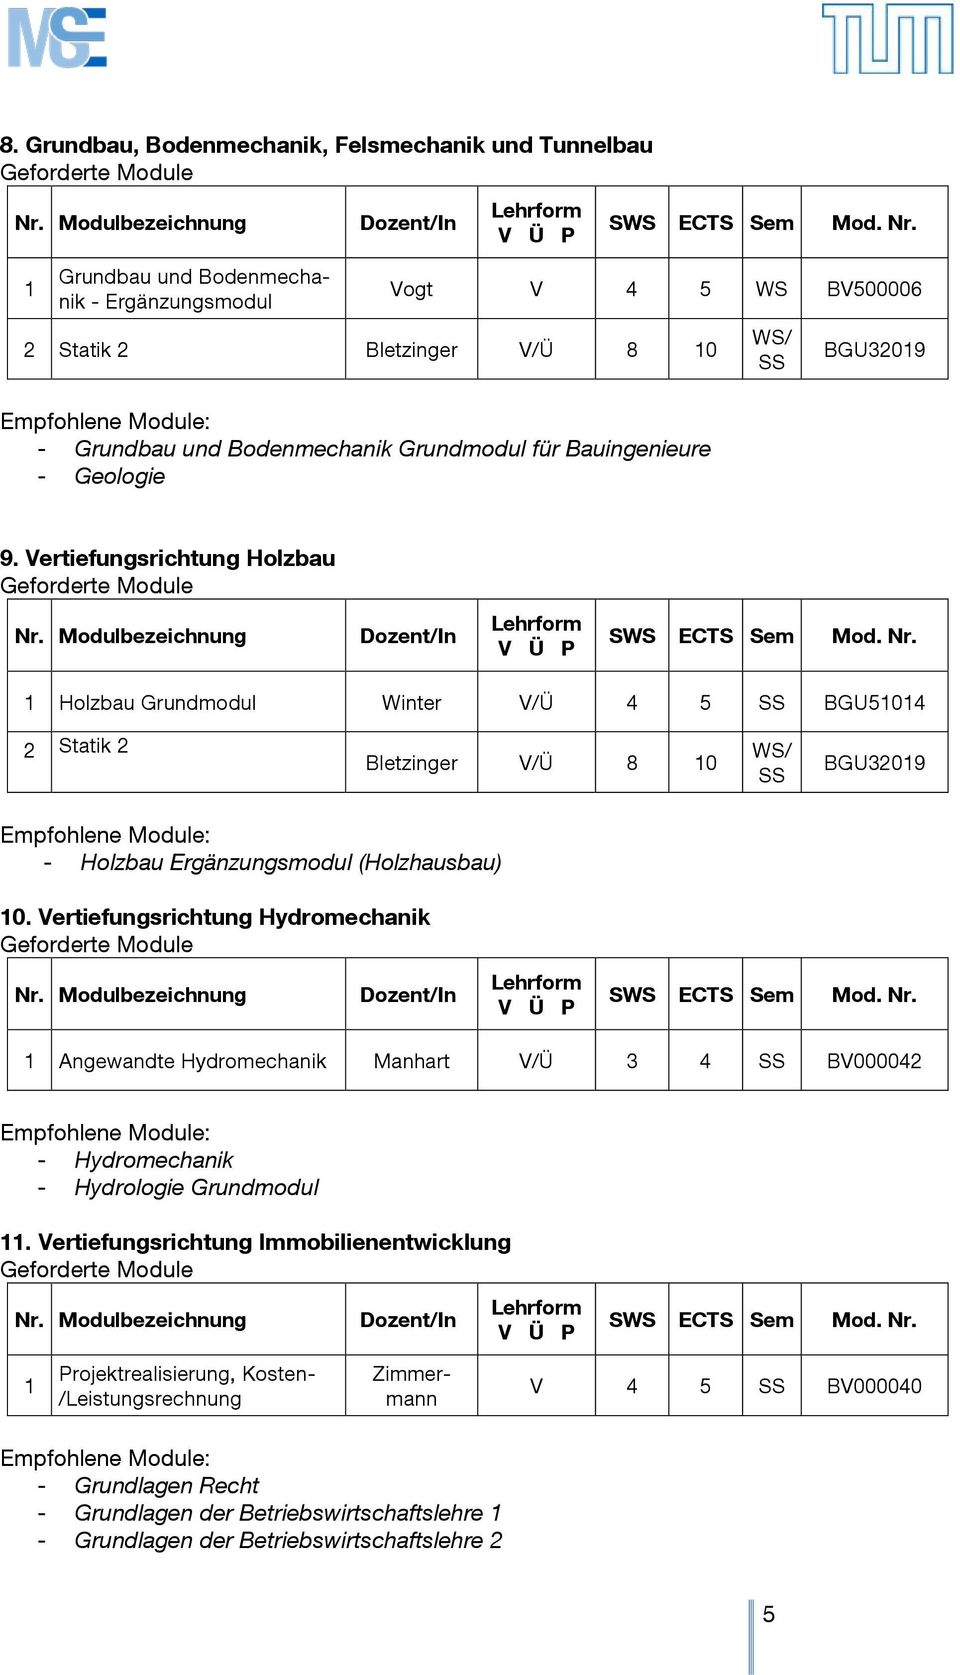 Vertiefungsrichtung Holzbau Holzbau Grundmodul Winter V/Ü 4 5 SS BGU504 Statik Bletzinger V/Ü 8 0 WS/ SS BGU309 - Holzbau Ergänzungsmodul (Holzhausbau) 0.